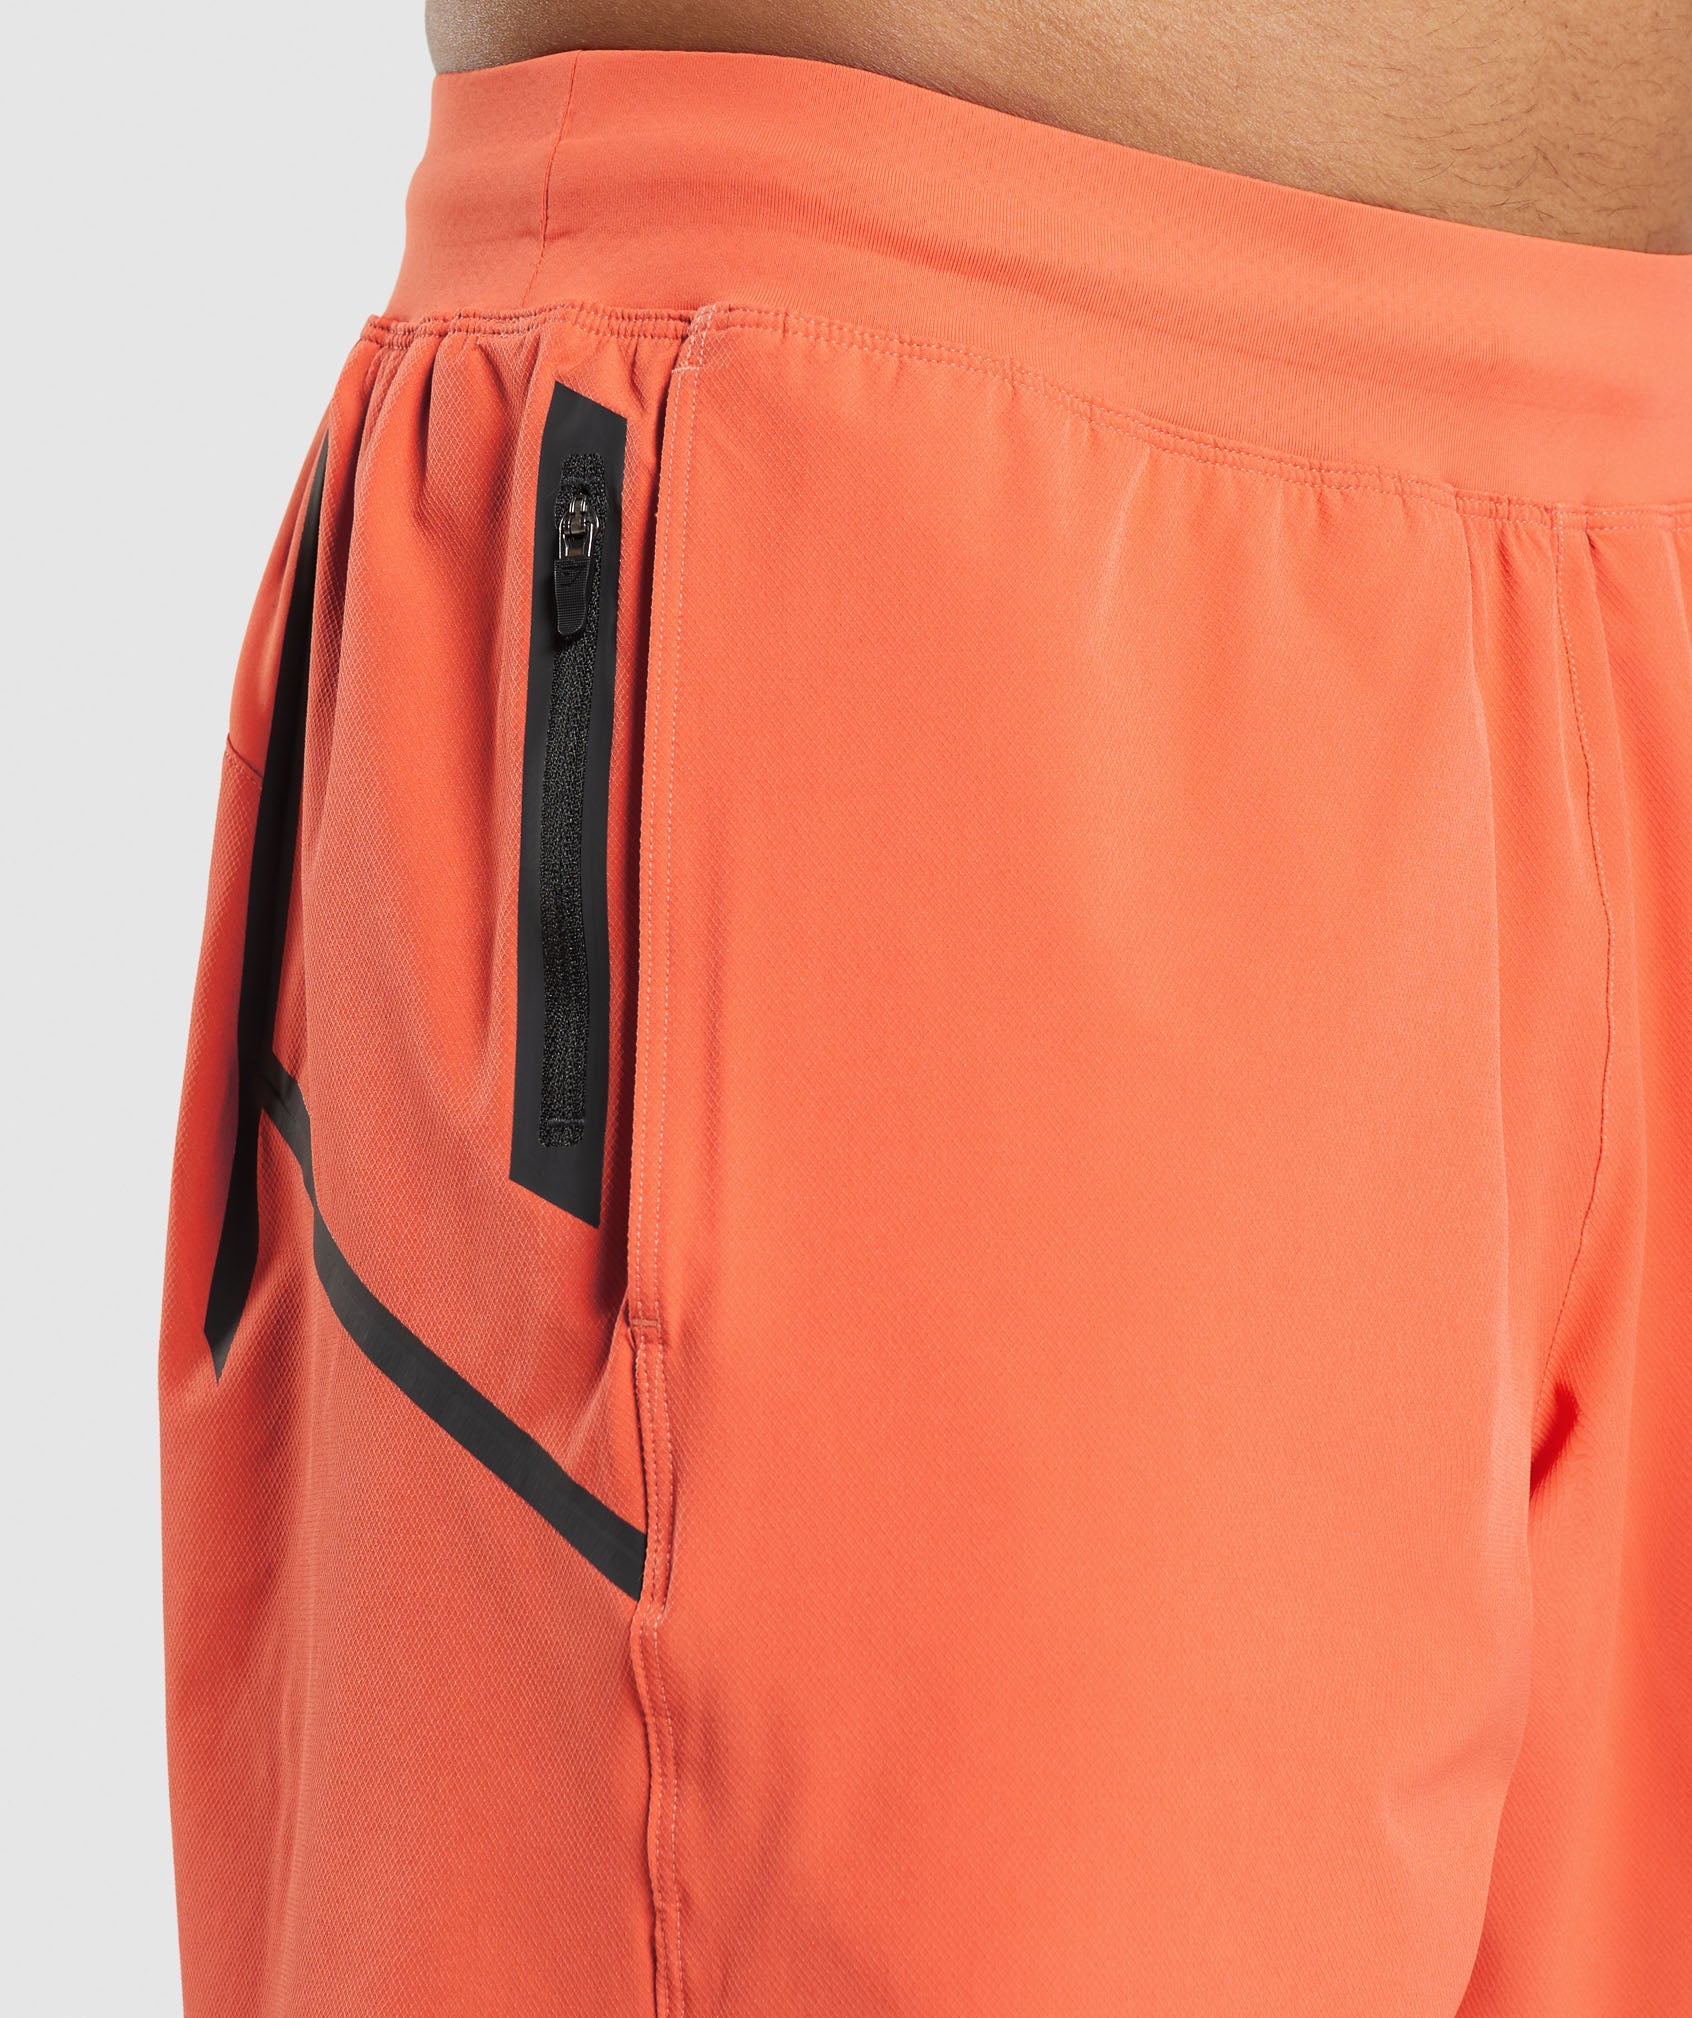 Apex 8" Function Shorts in Papaya Orange - view 4